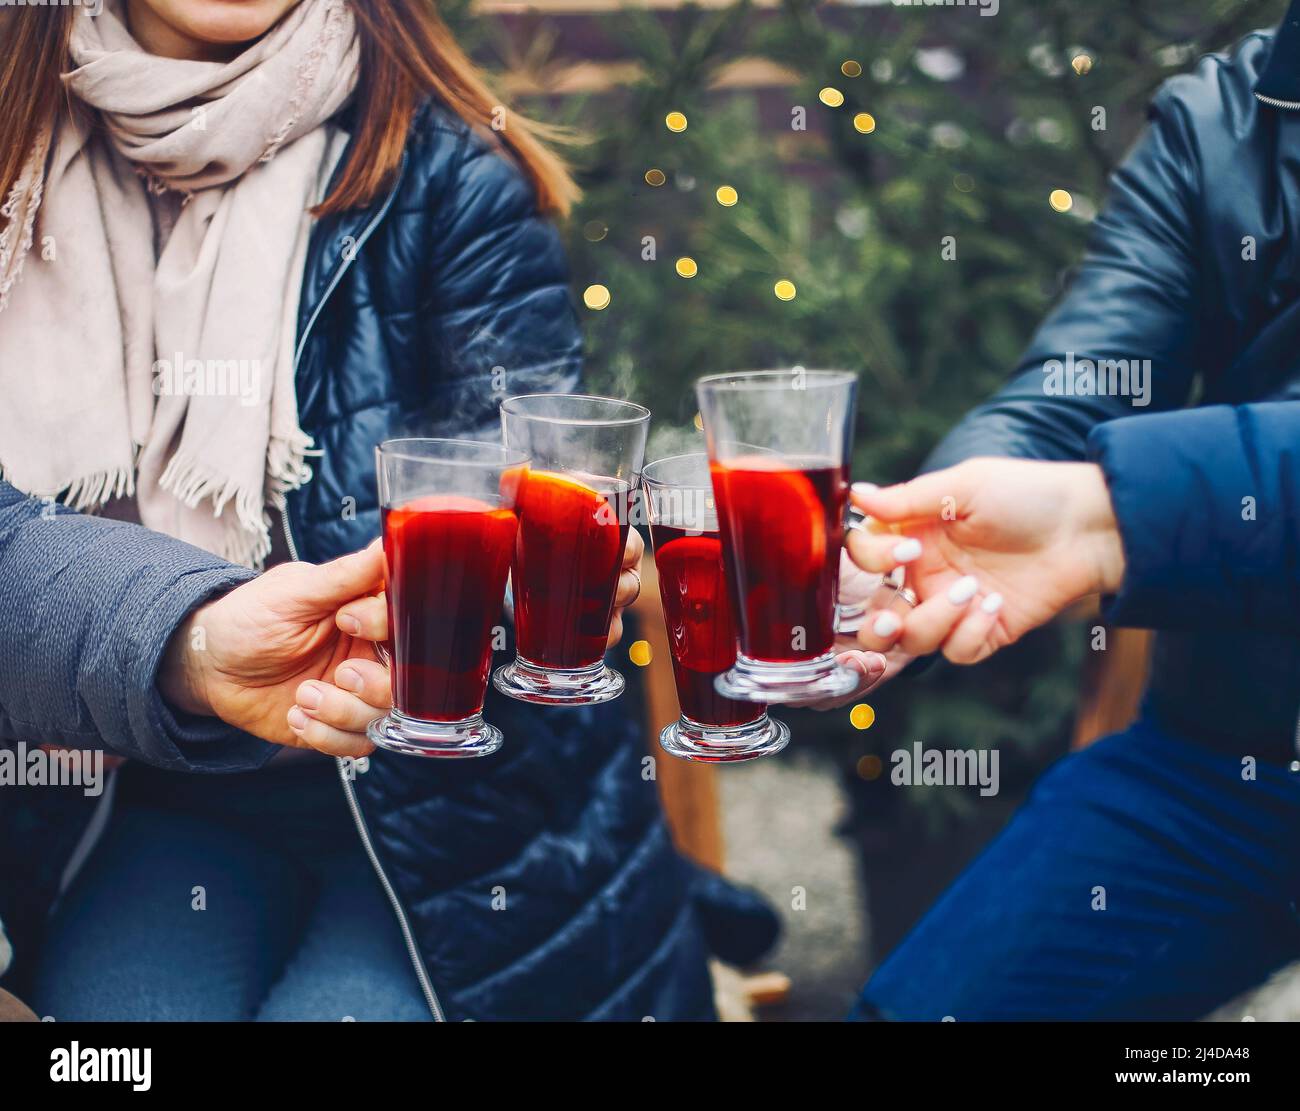 Amis qui boivent un délicieux vin chaud lors de la fête. Prise de vue d'un groupe de jeunes amis joyeux s'amusant et appréciant une boisson chaude sur le marché de Noël A. Banque D'Images